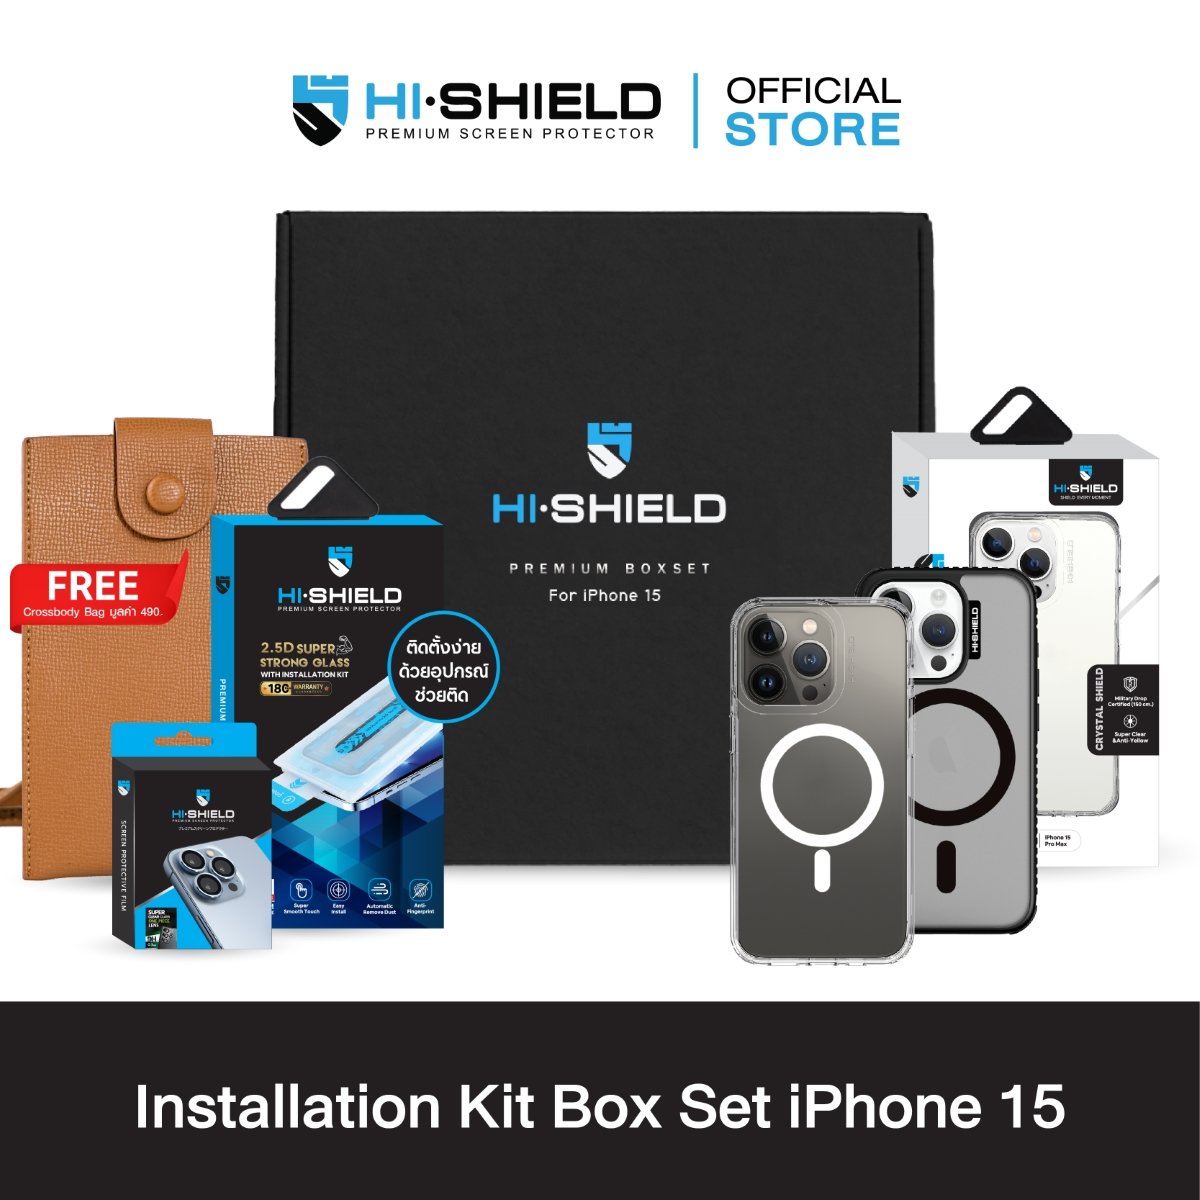 ติดตั้งง่าย] HI-SHIELD Installation Kit Box Set iPhone15 เซตกระจกกันรอย  พร้อมบล็อกช่วยติดตั้ง [Box Set iPhone14] - hishieldgadget